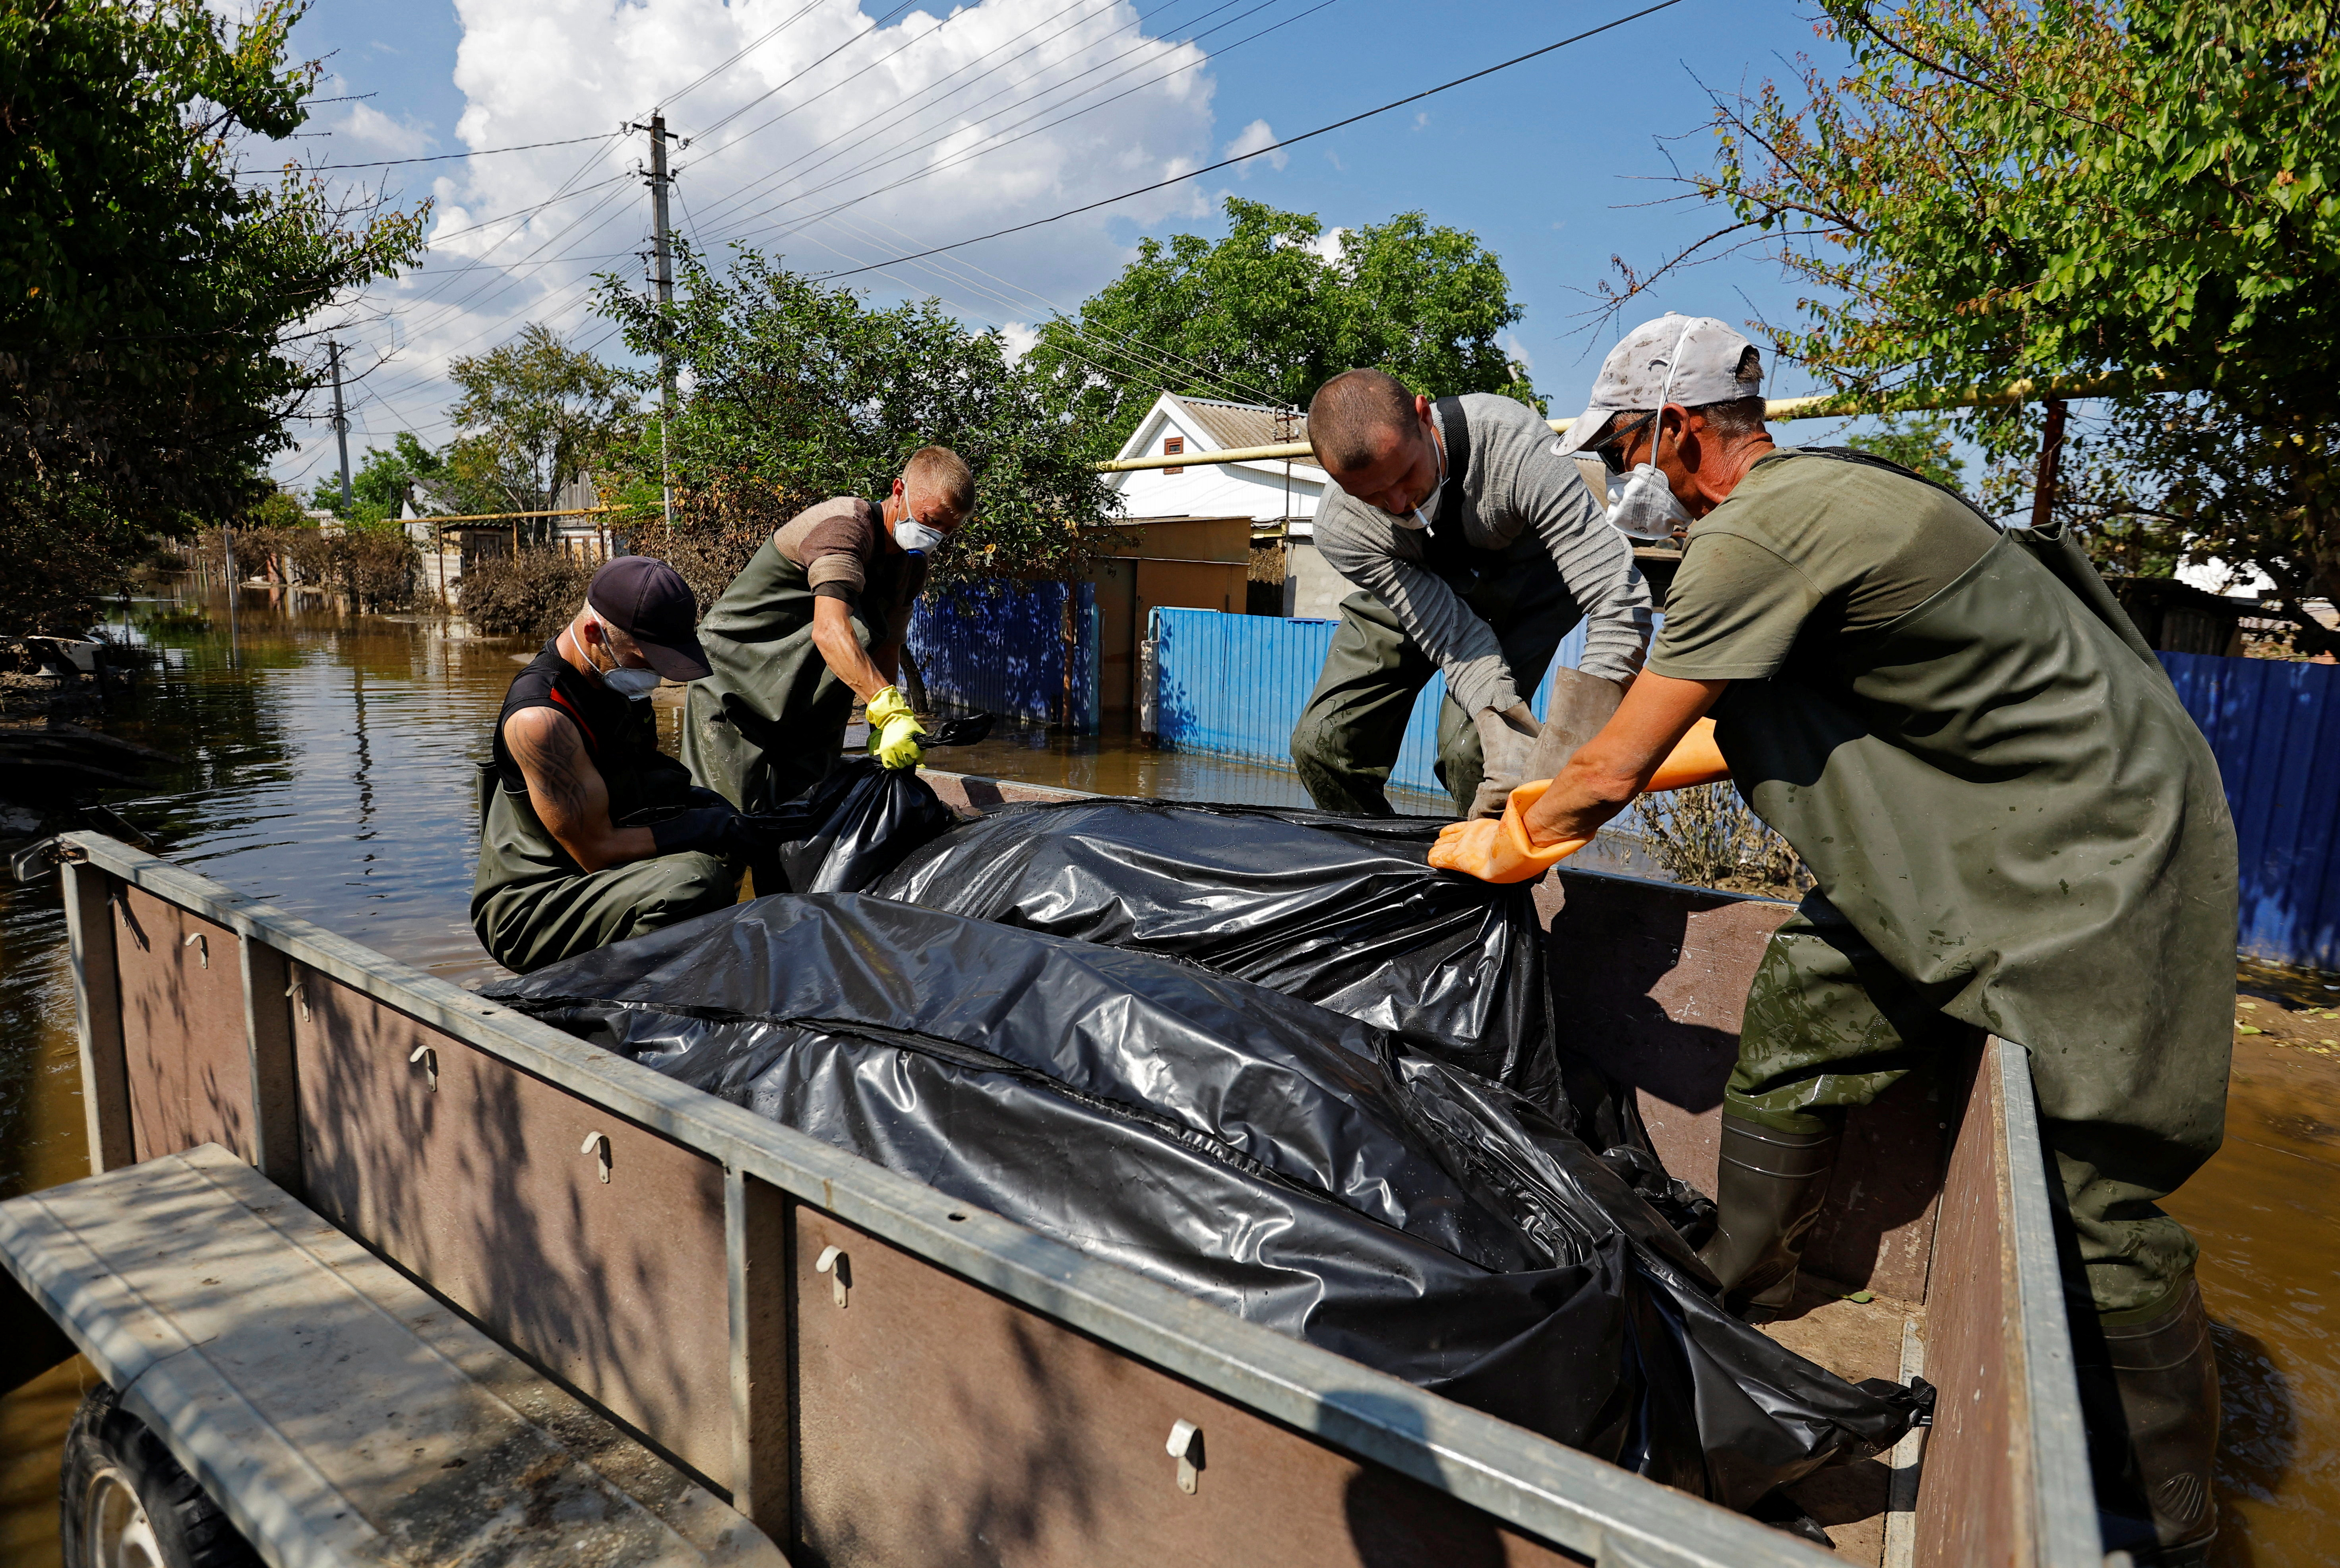 Voluntarios y trabajadores municipales colocan bolsas con cuerpos recuperados de casas inundadas tras el colapso de la presa de Nova Kakhovka. REUTERS/Alexander Ermochenko